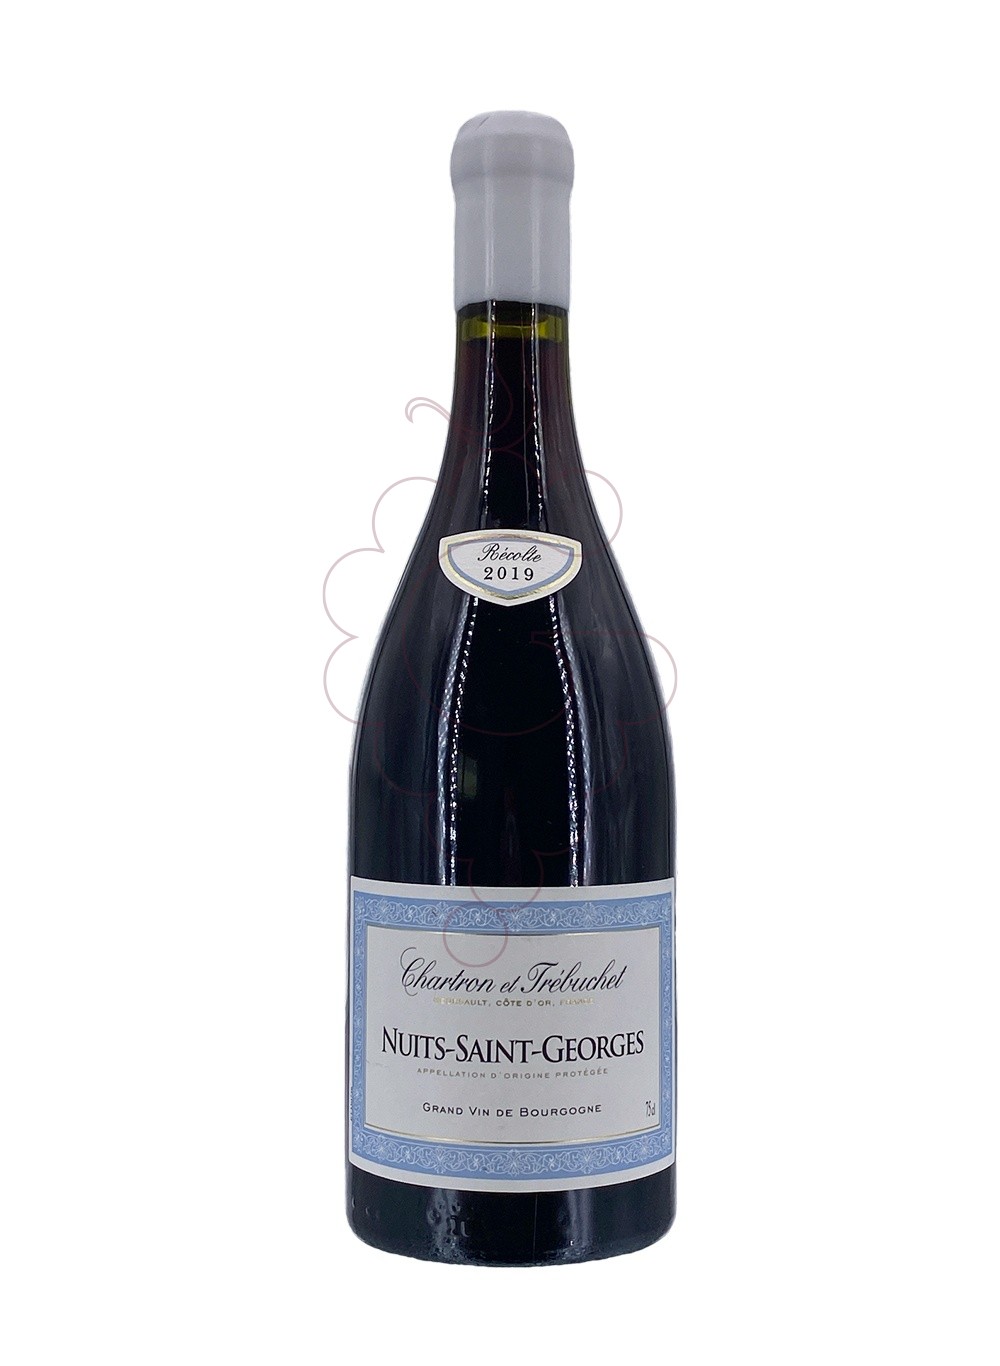 Photo Chartron et Trebuchet Nuits-Saint-Georges red wine